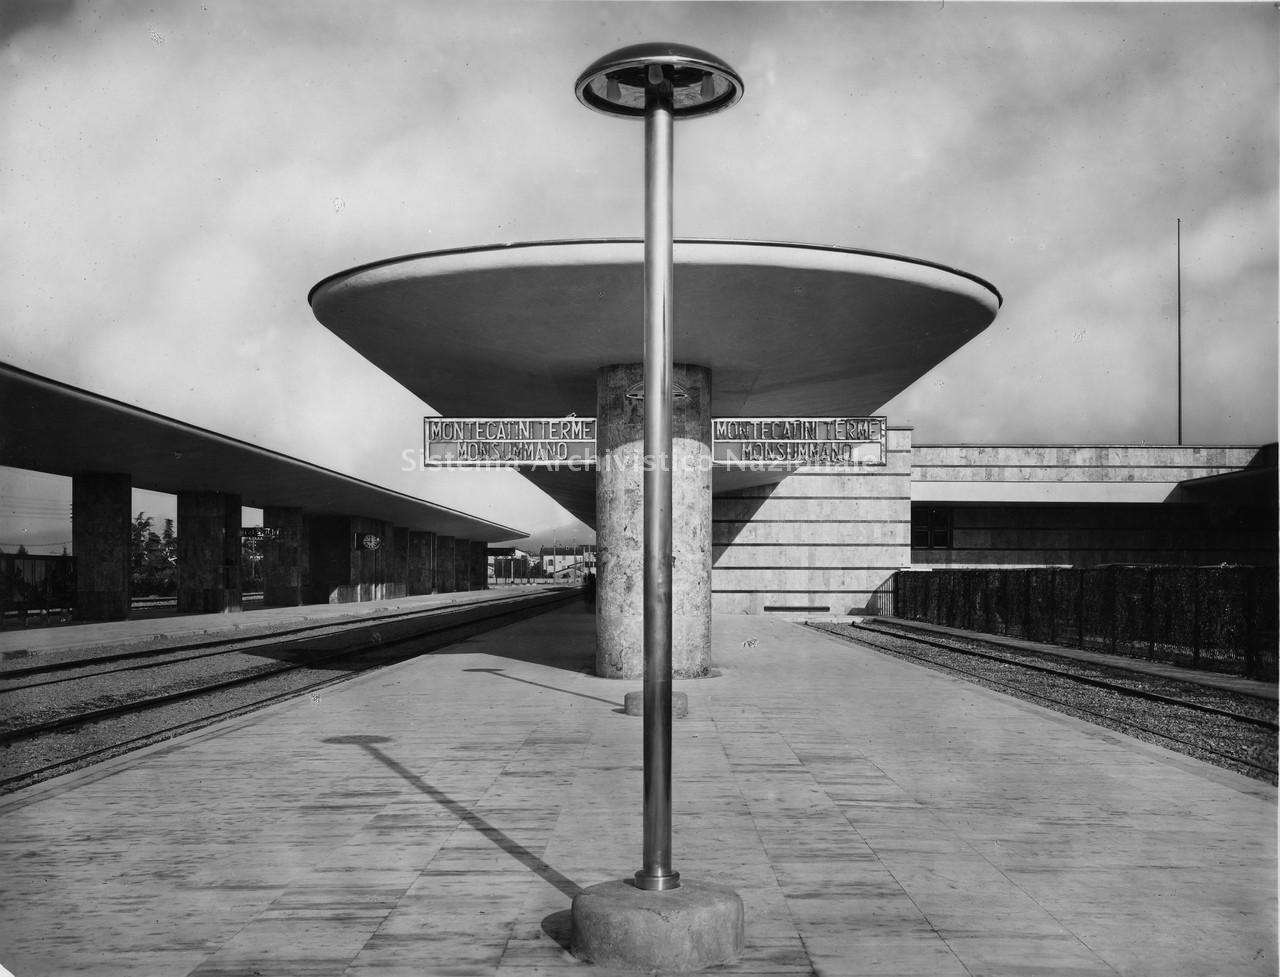  Stazione ferroviaria Montecatini Terme–Monsumanno Terme, progetto, veduta, 1933-1936. 